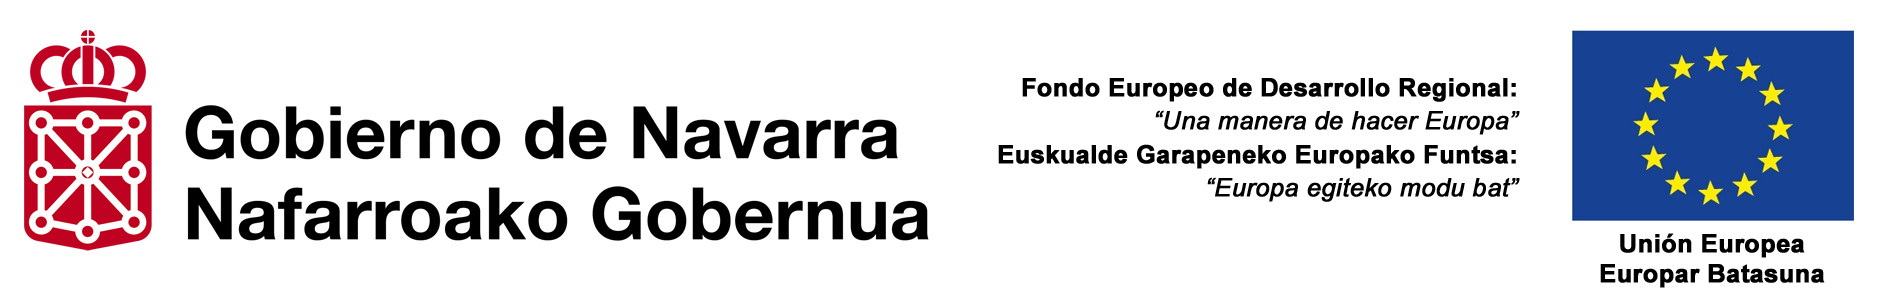 Logo FEDER GN bilingue